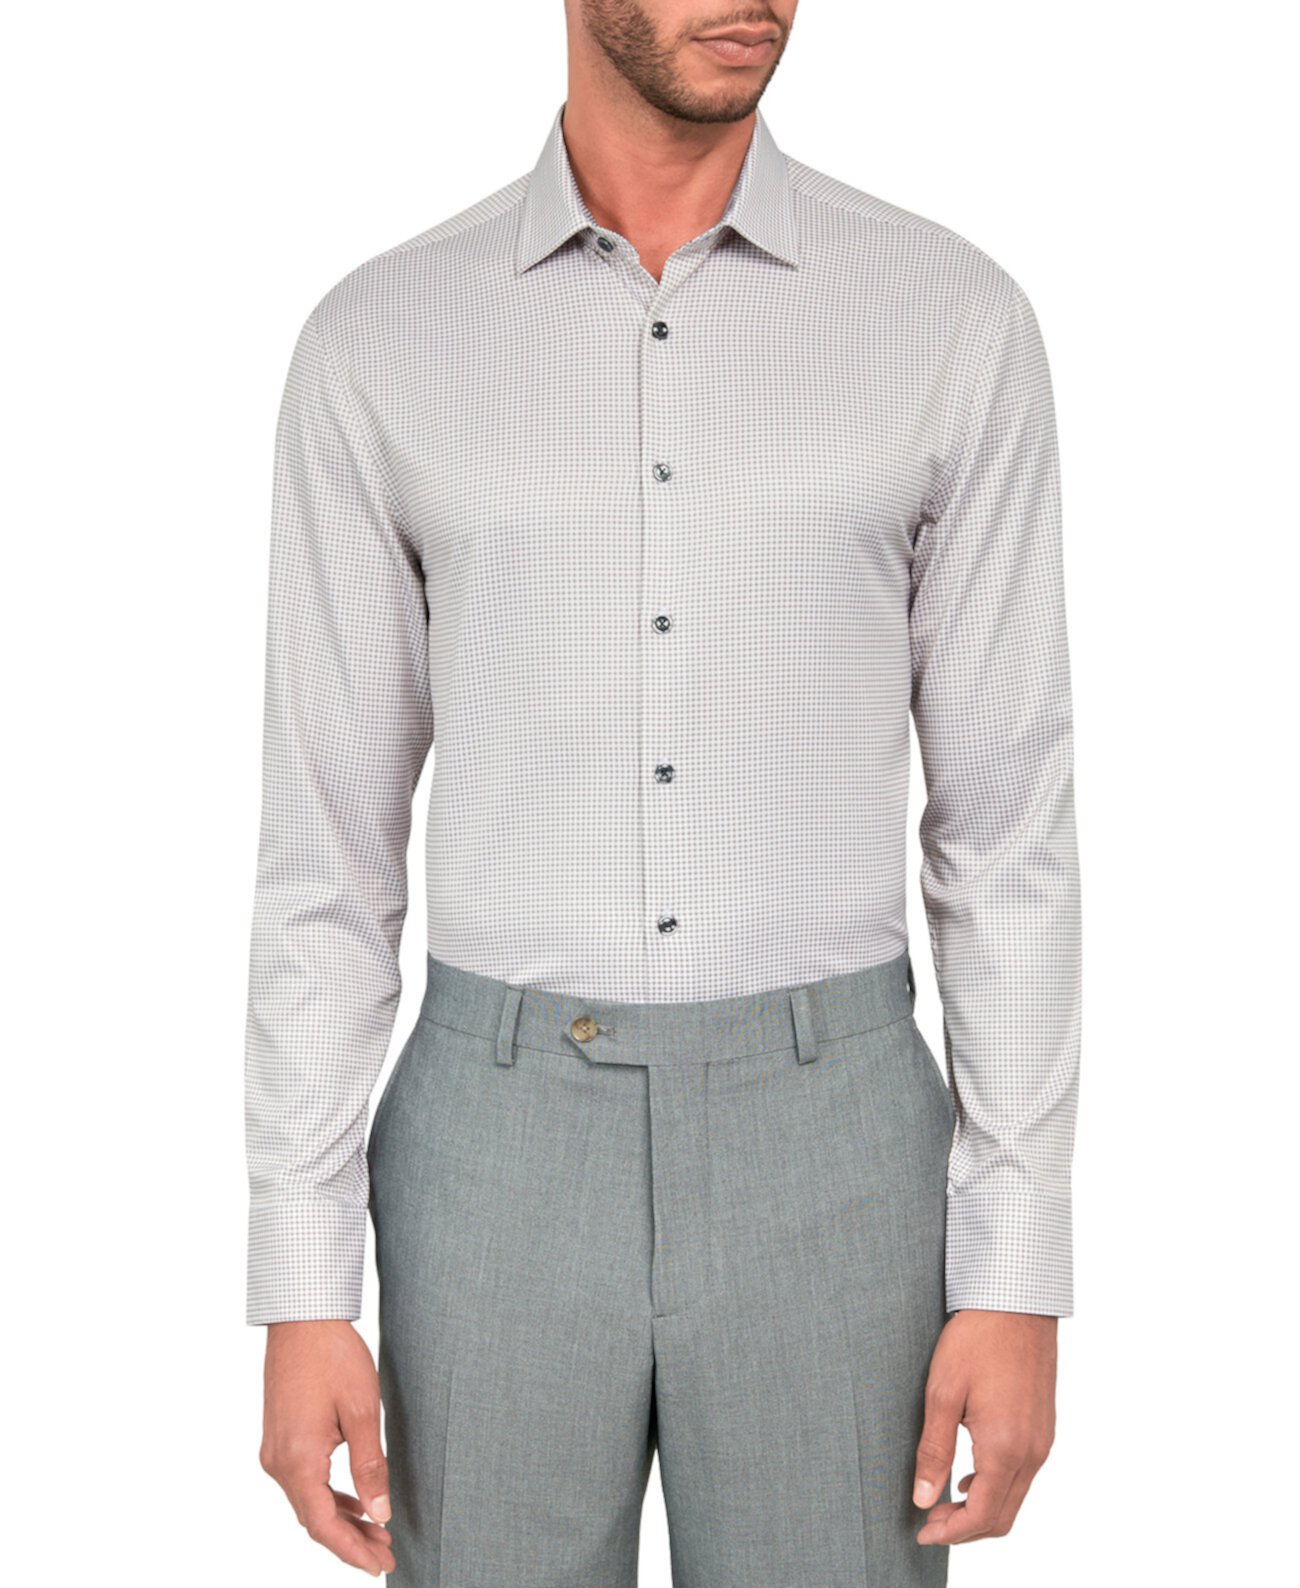 Мужская приталенная классическая рубашка в клетку с эффектом стрейч и охлаждением CONSTRUCT